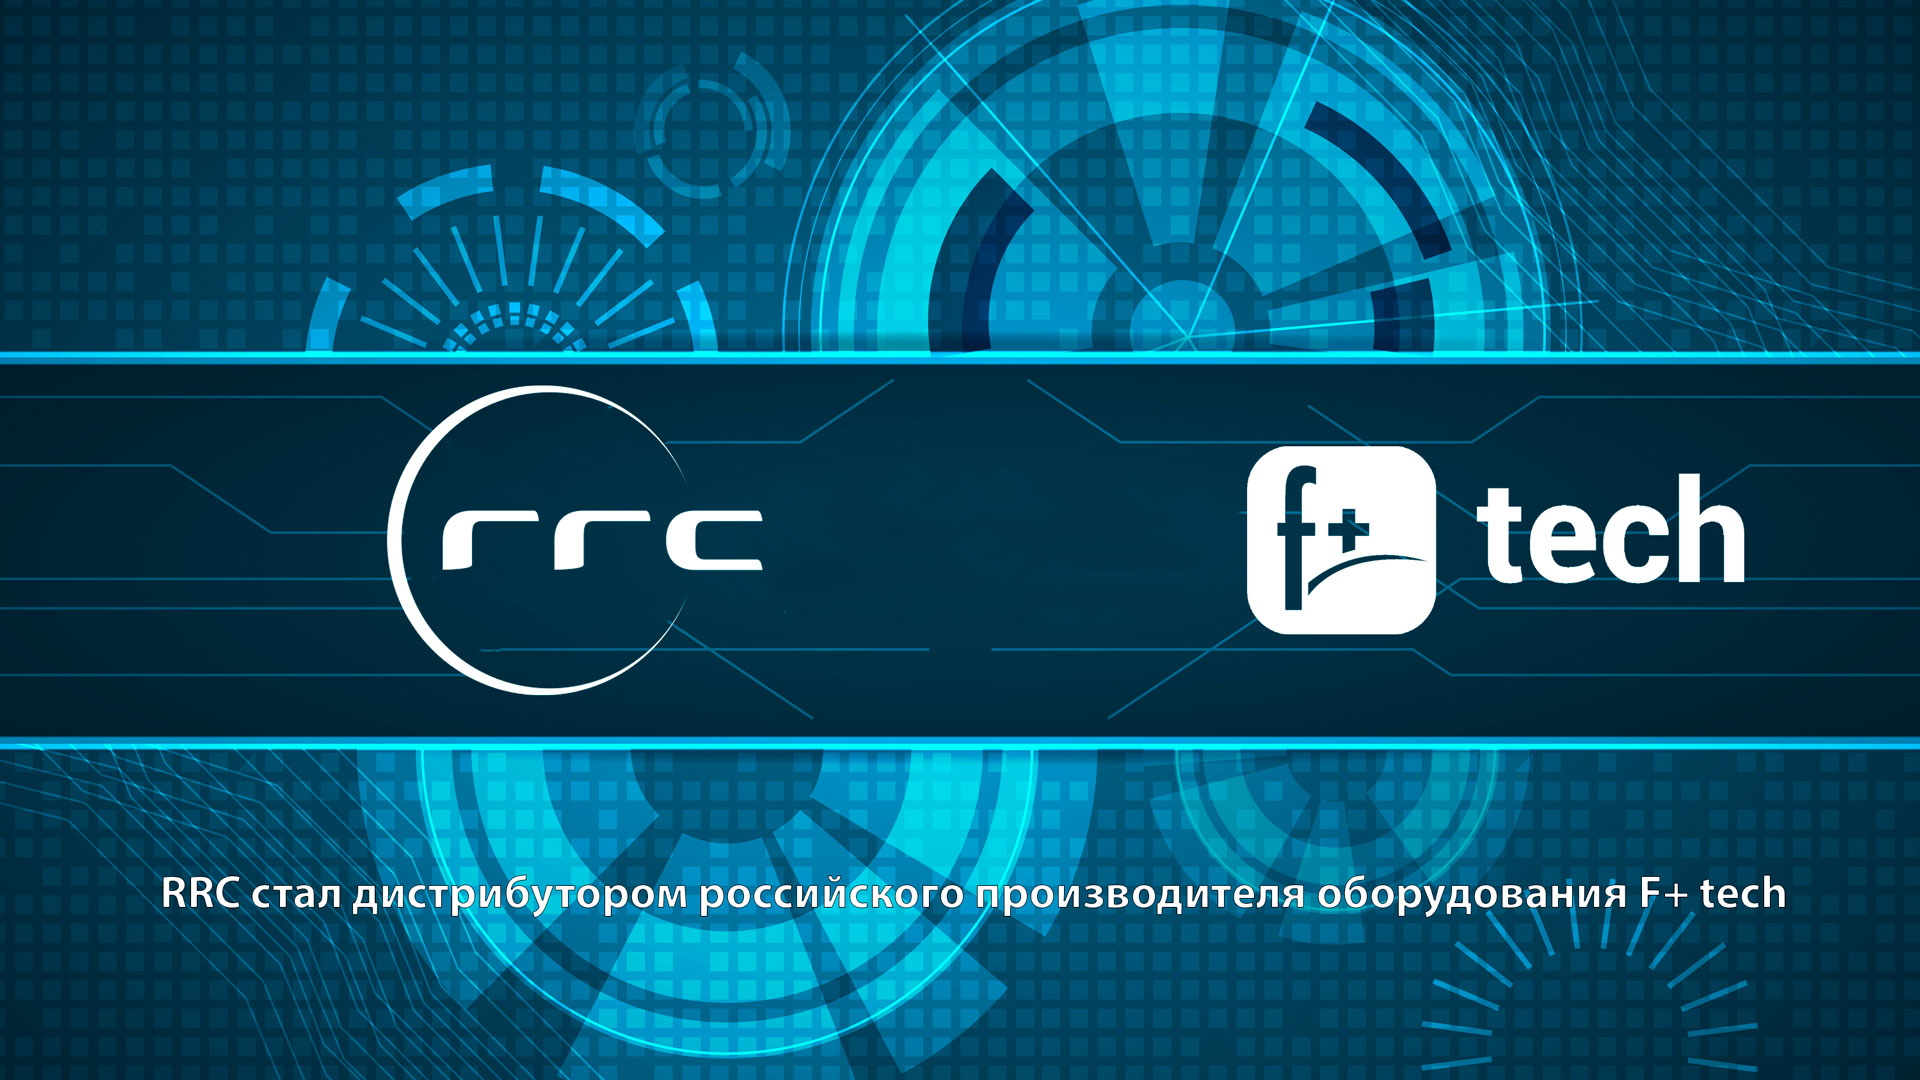 RRC стал дистрибутором российского производителя оборудования F+ tech